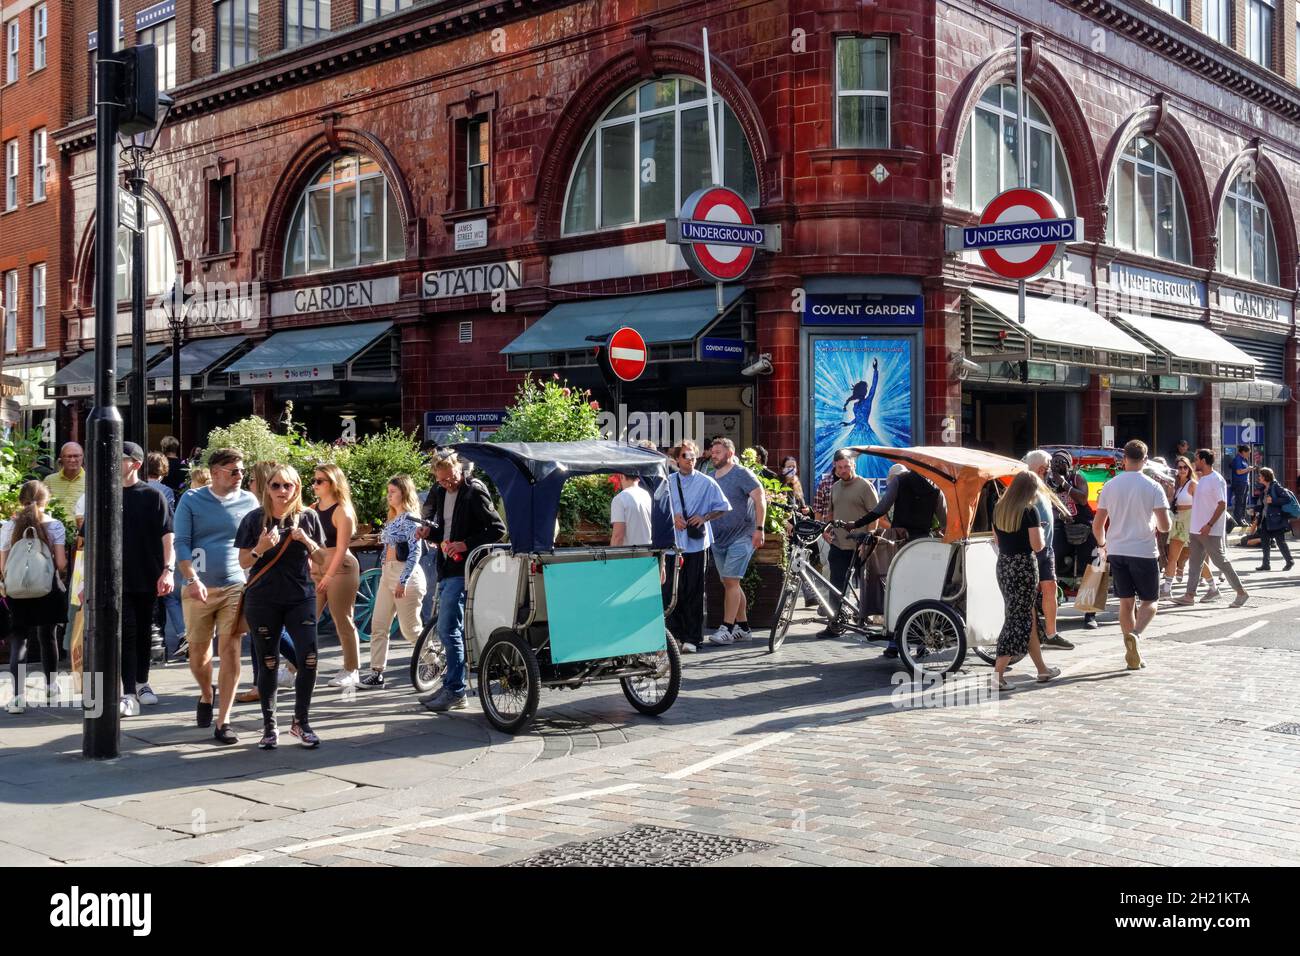 Les chauffeurs de pousse-pousse ou de pousse-pousse attendent les touristes à Covent Garden à Londres, Angleterre Royaume-Uni Royaume-Uni Banque D'Images